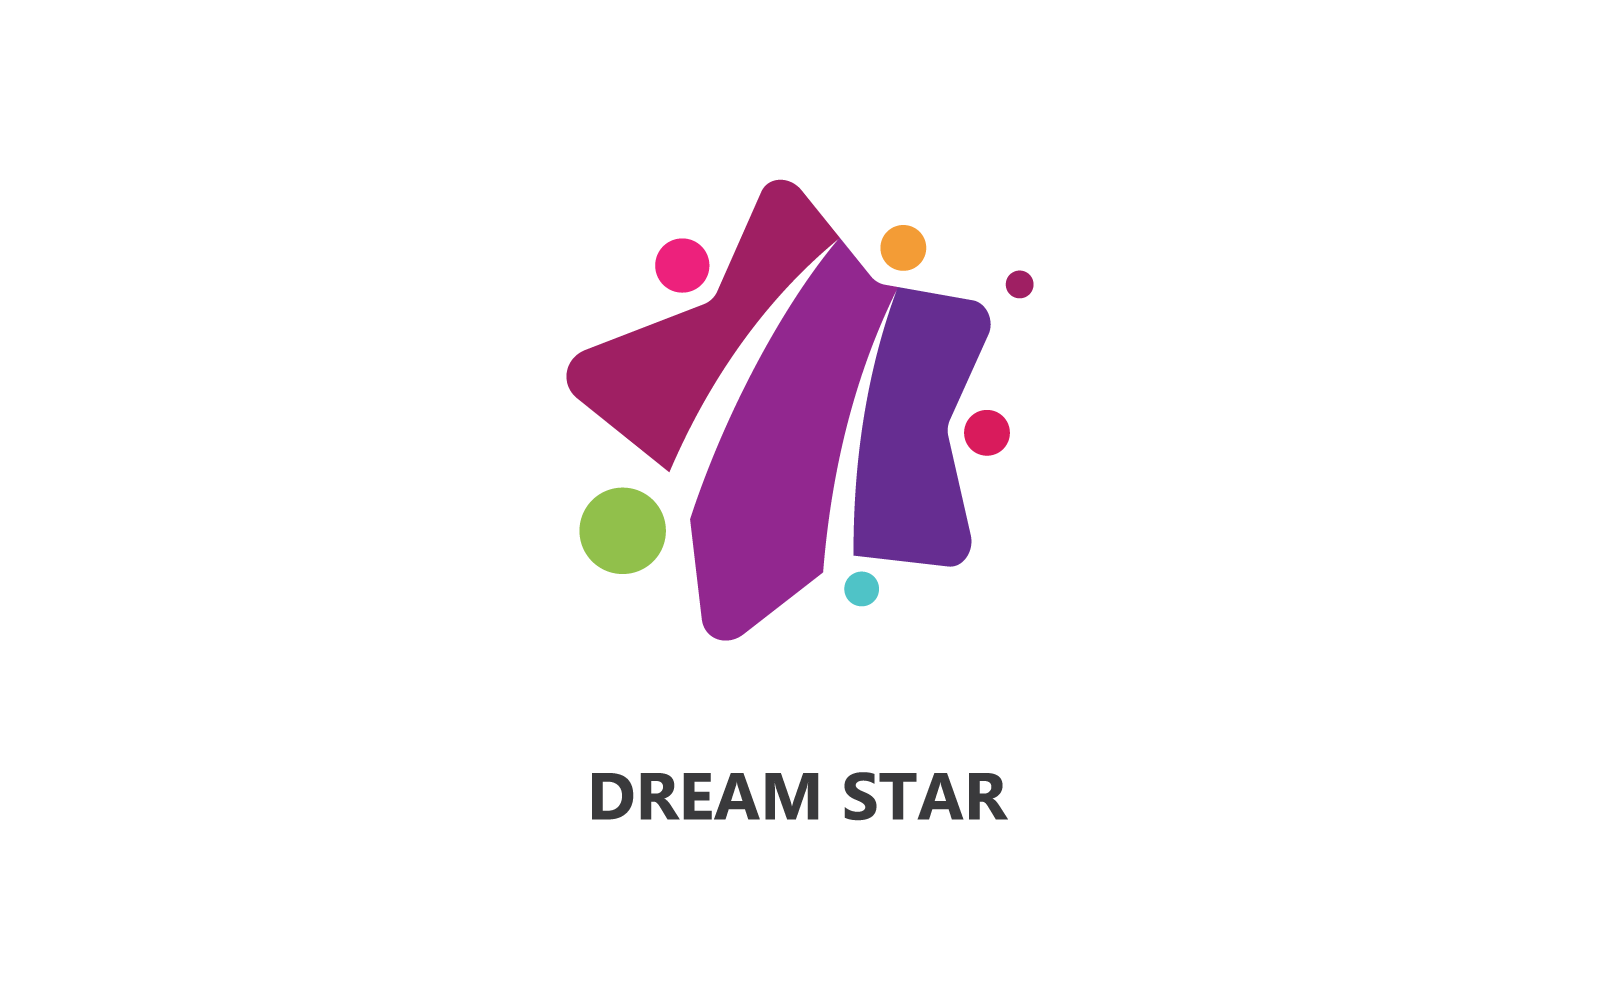 Dreams star logo vector design template